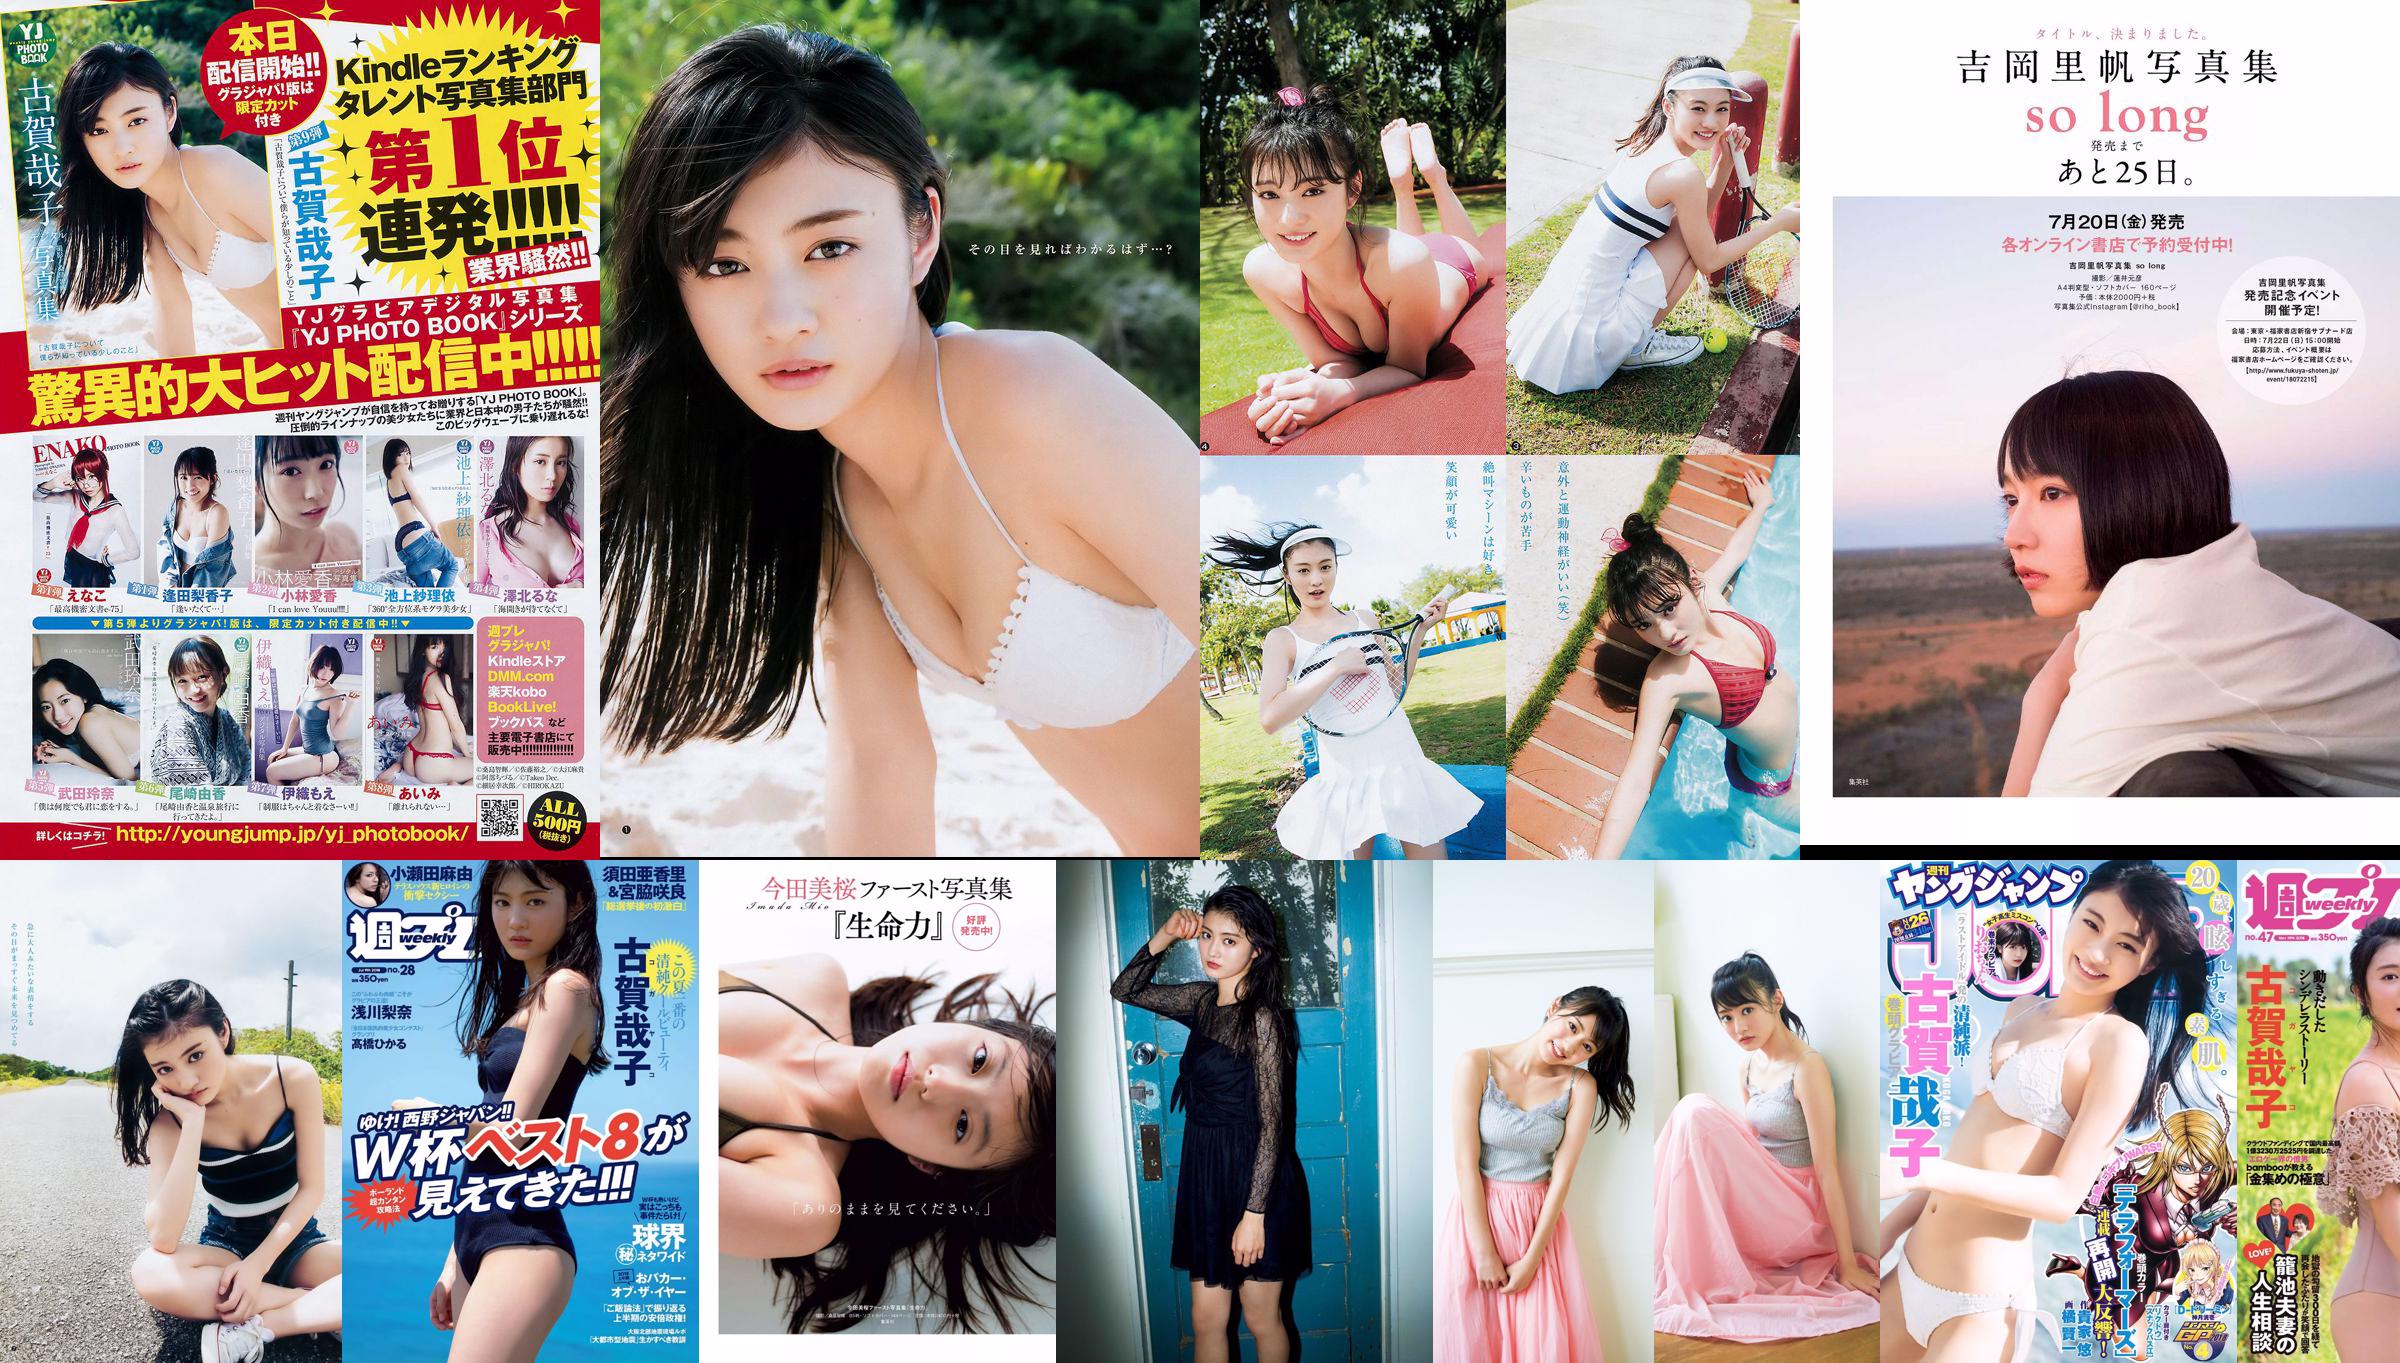 Yako Koga Rina Asakawa Hikaru Takahashi alom Nanami Saki Mayu Koseta [Weekly Playboy] Foto No.28 2018 No.b4e39a Halaman 1